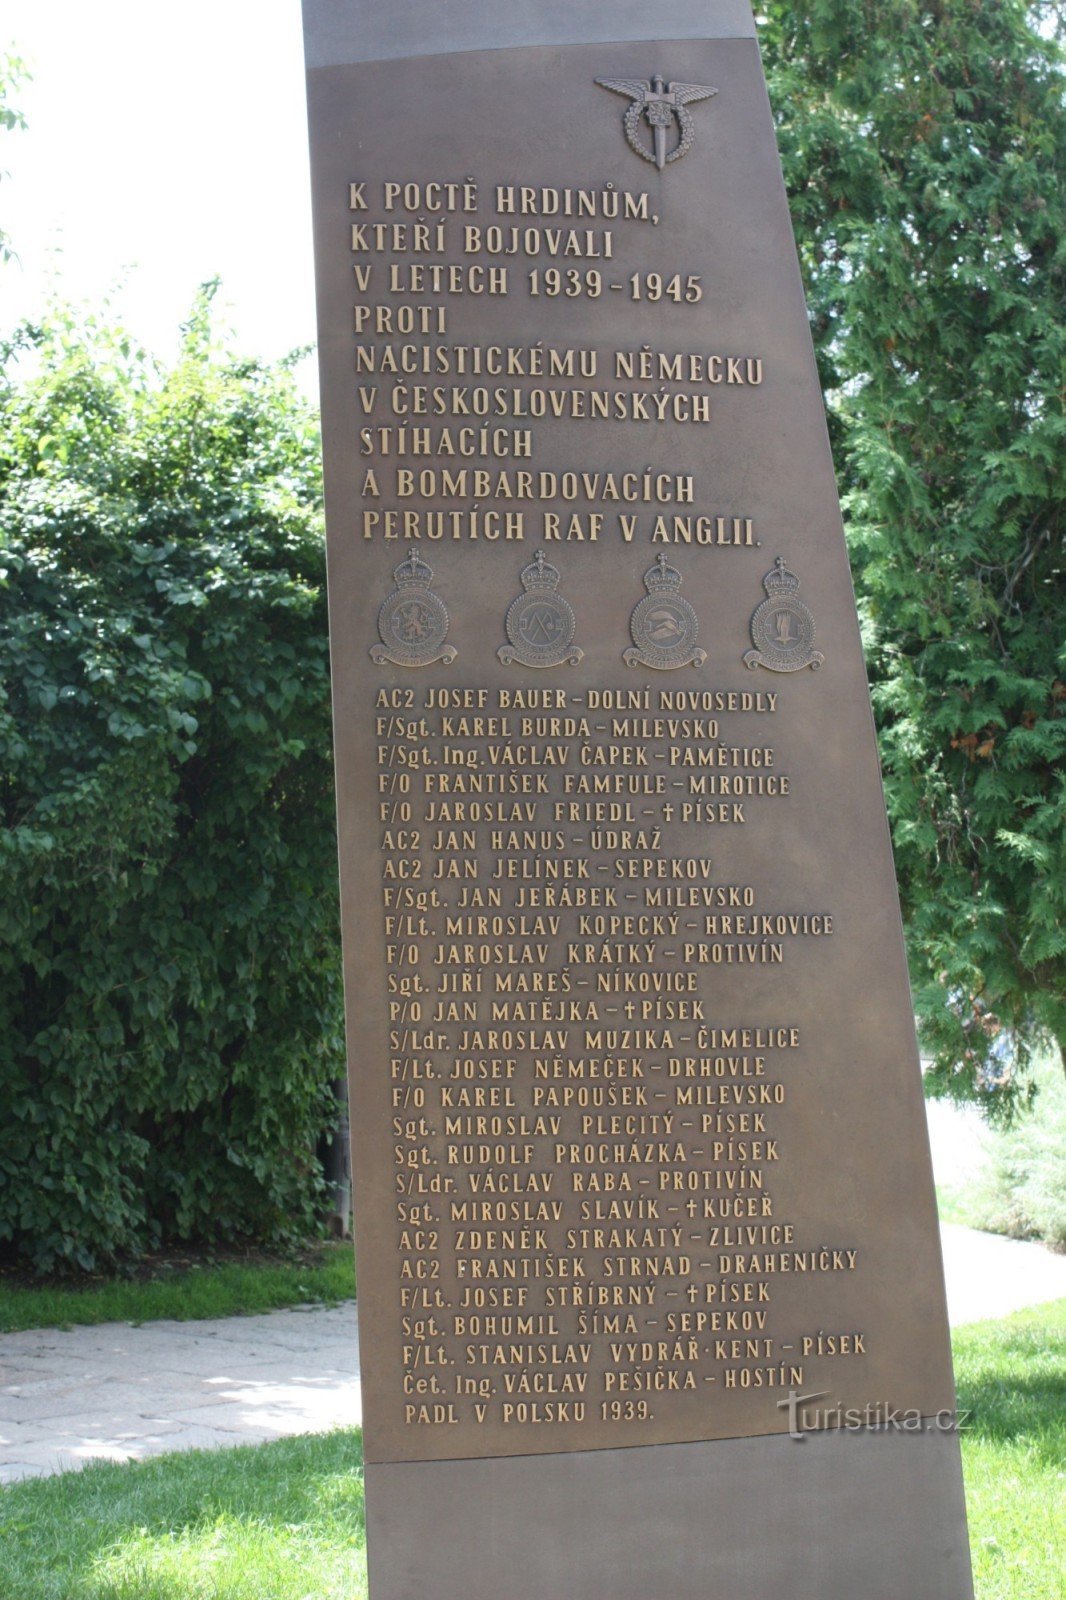 Un monument en forme de pale d'hélice cassée à Písek